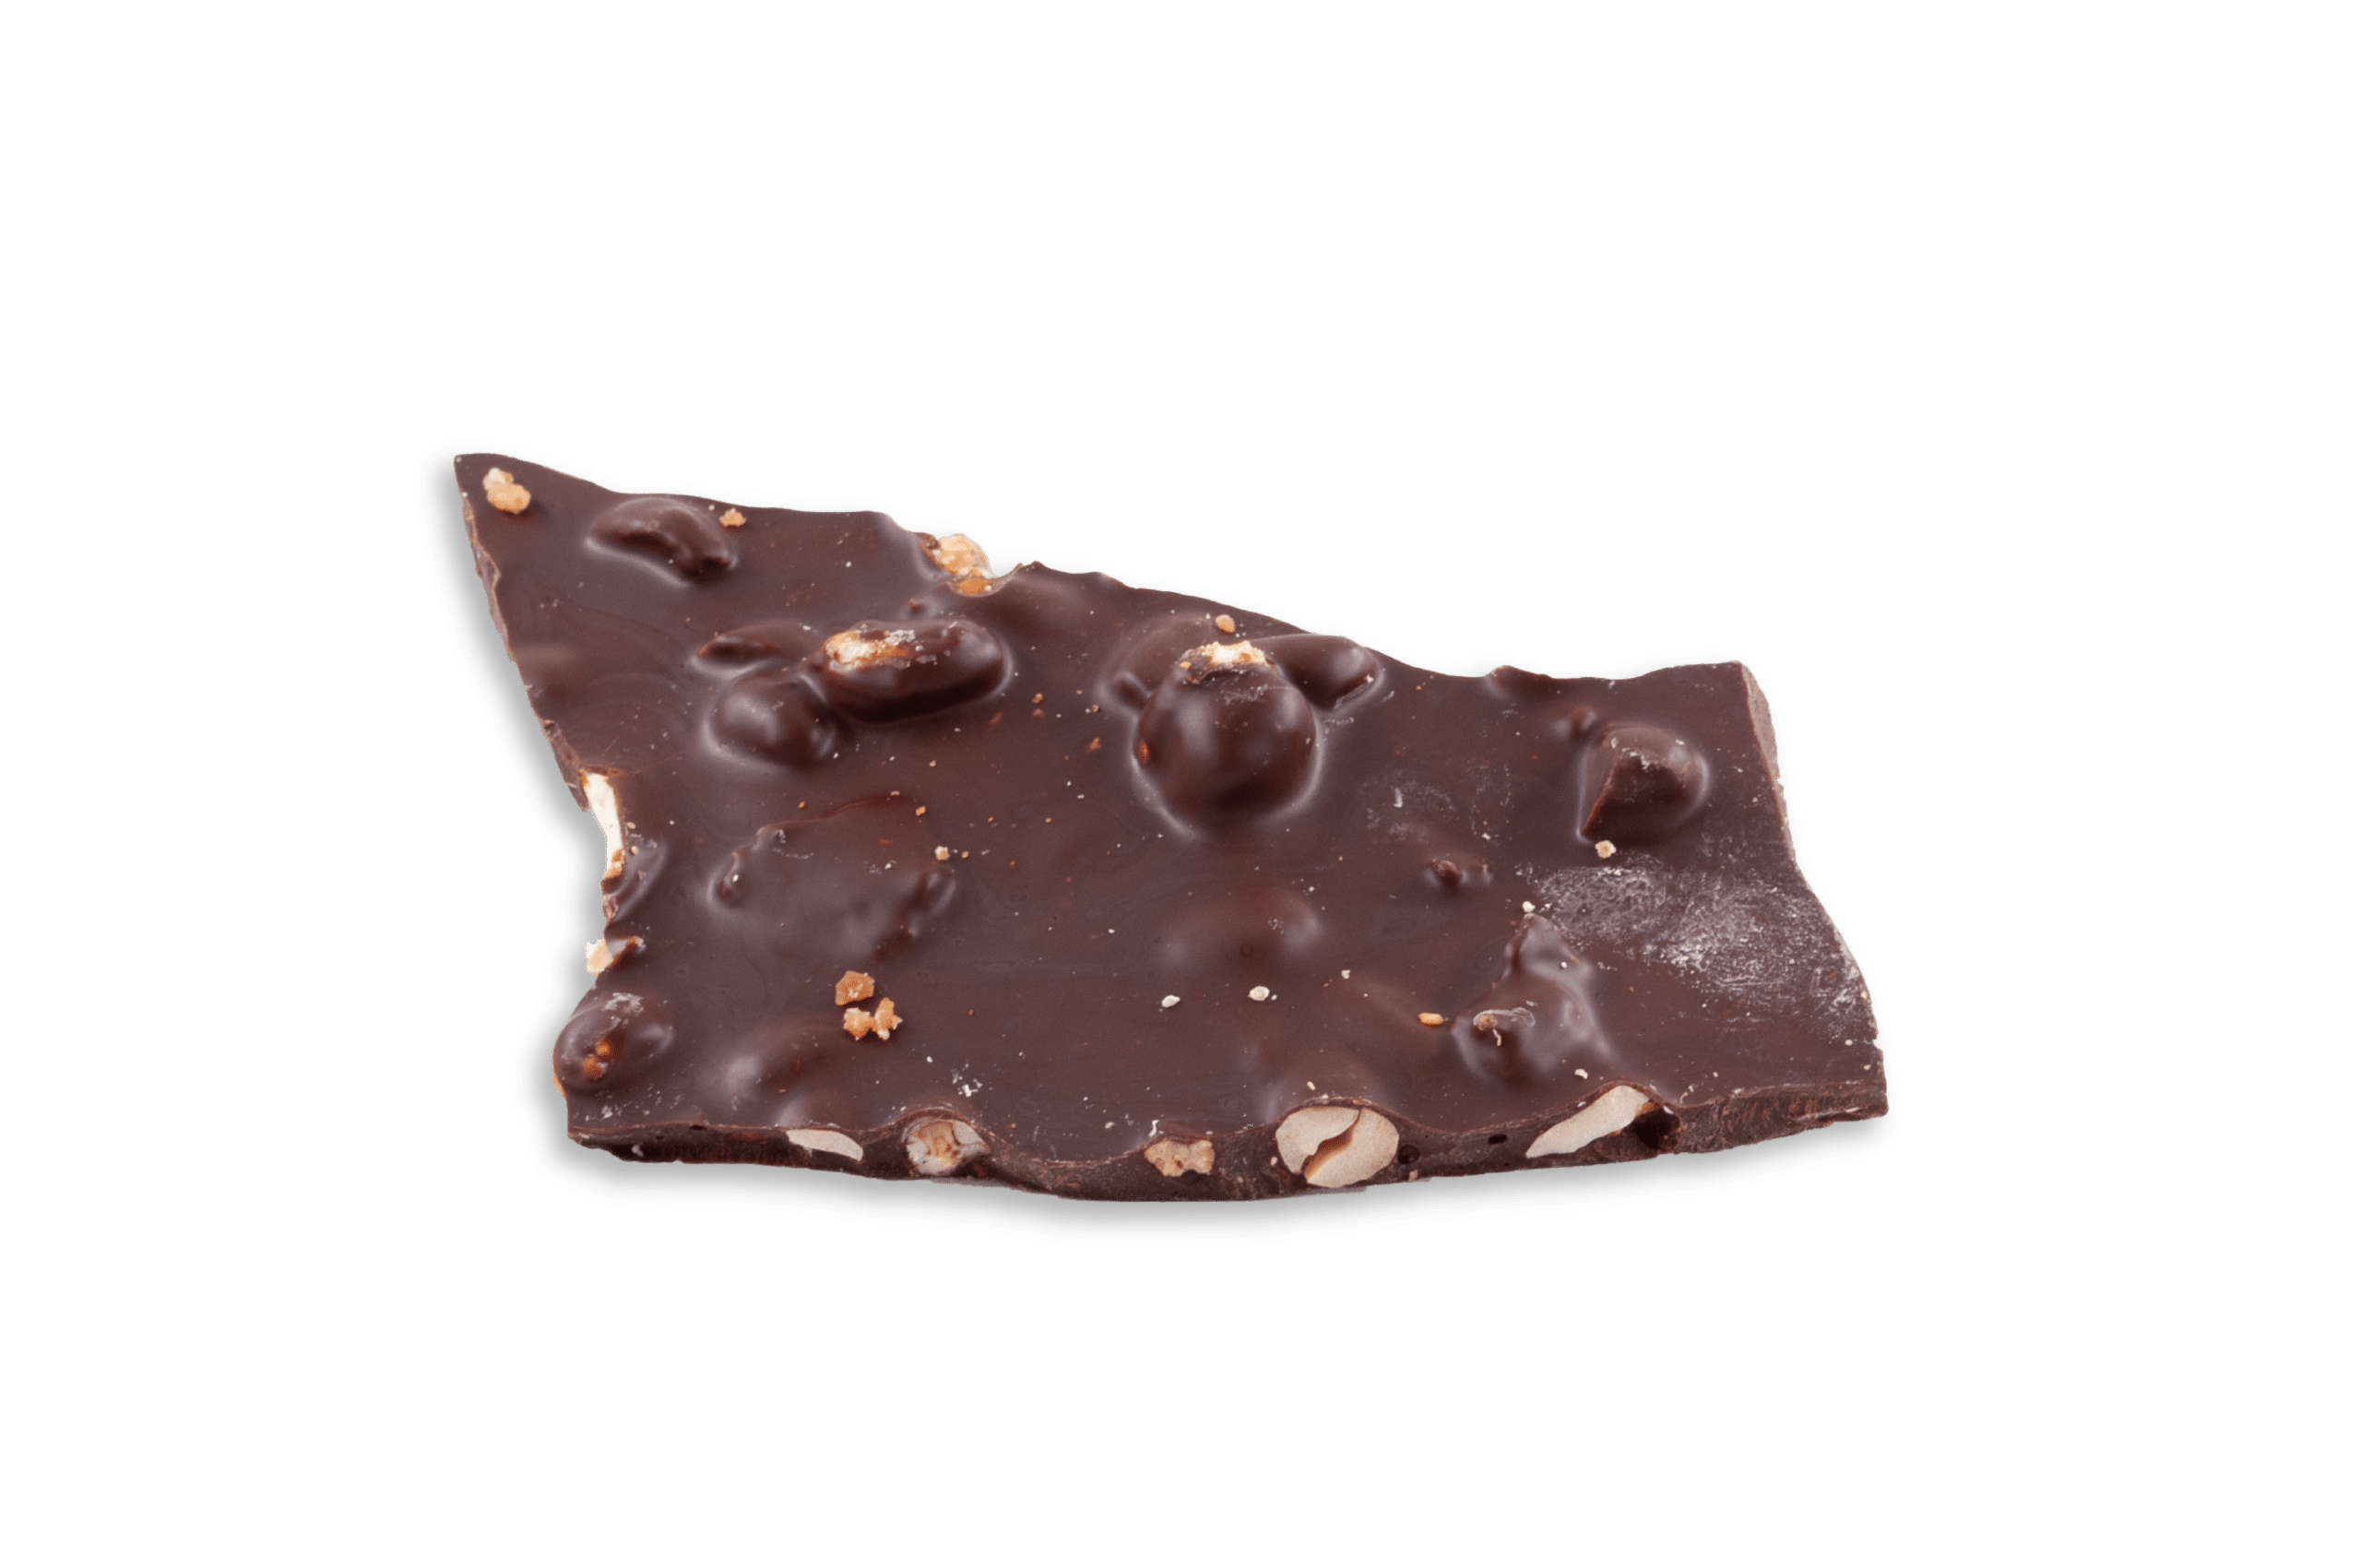 chocolat noir